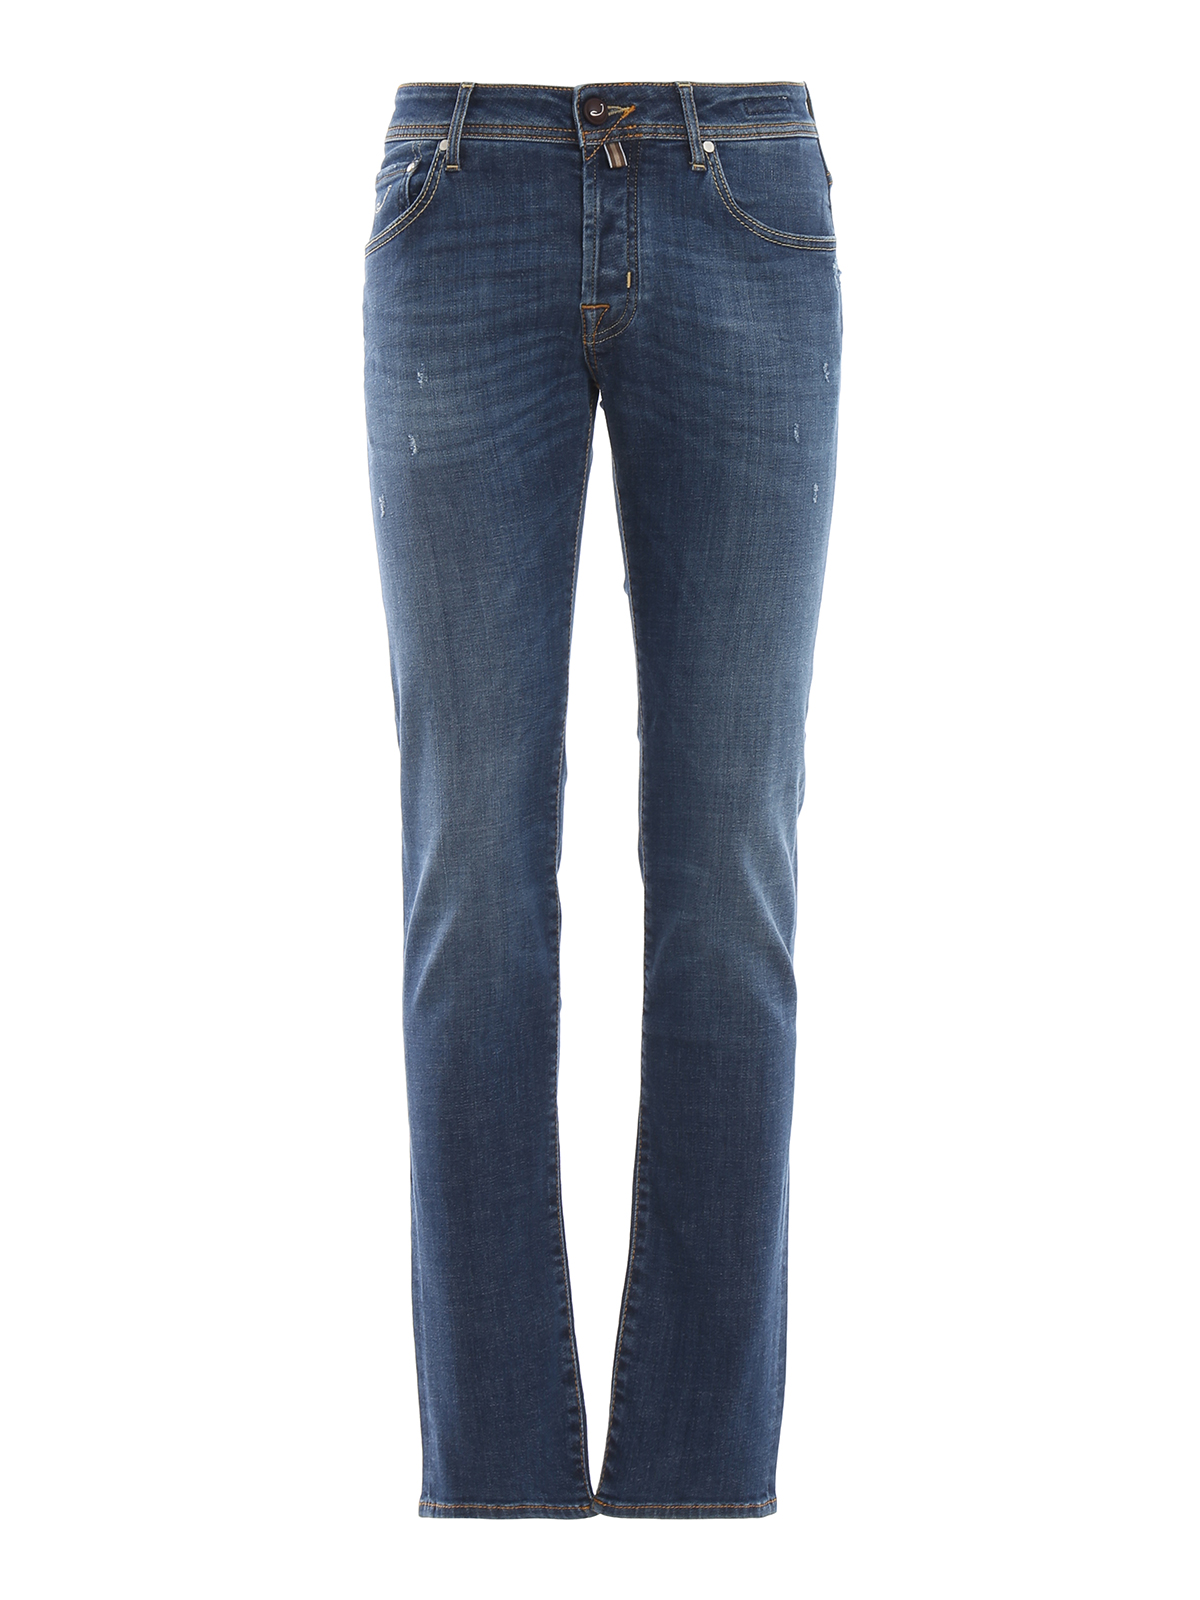 Straight leg jeans Jacob Cohen - Style 622 stretch cotton denim jeans ...